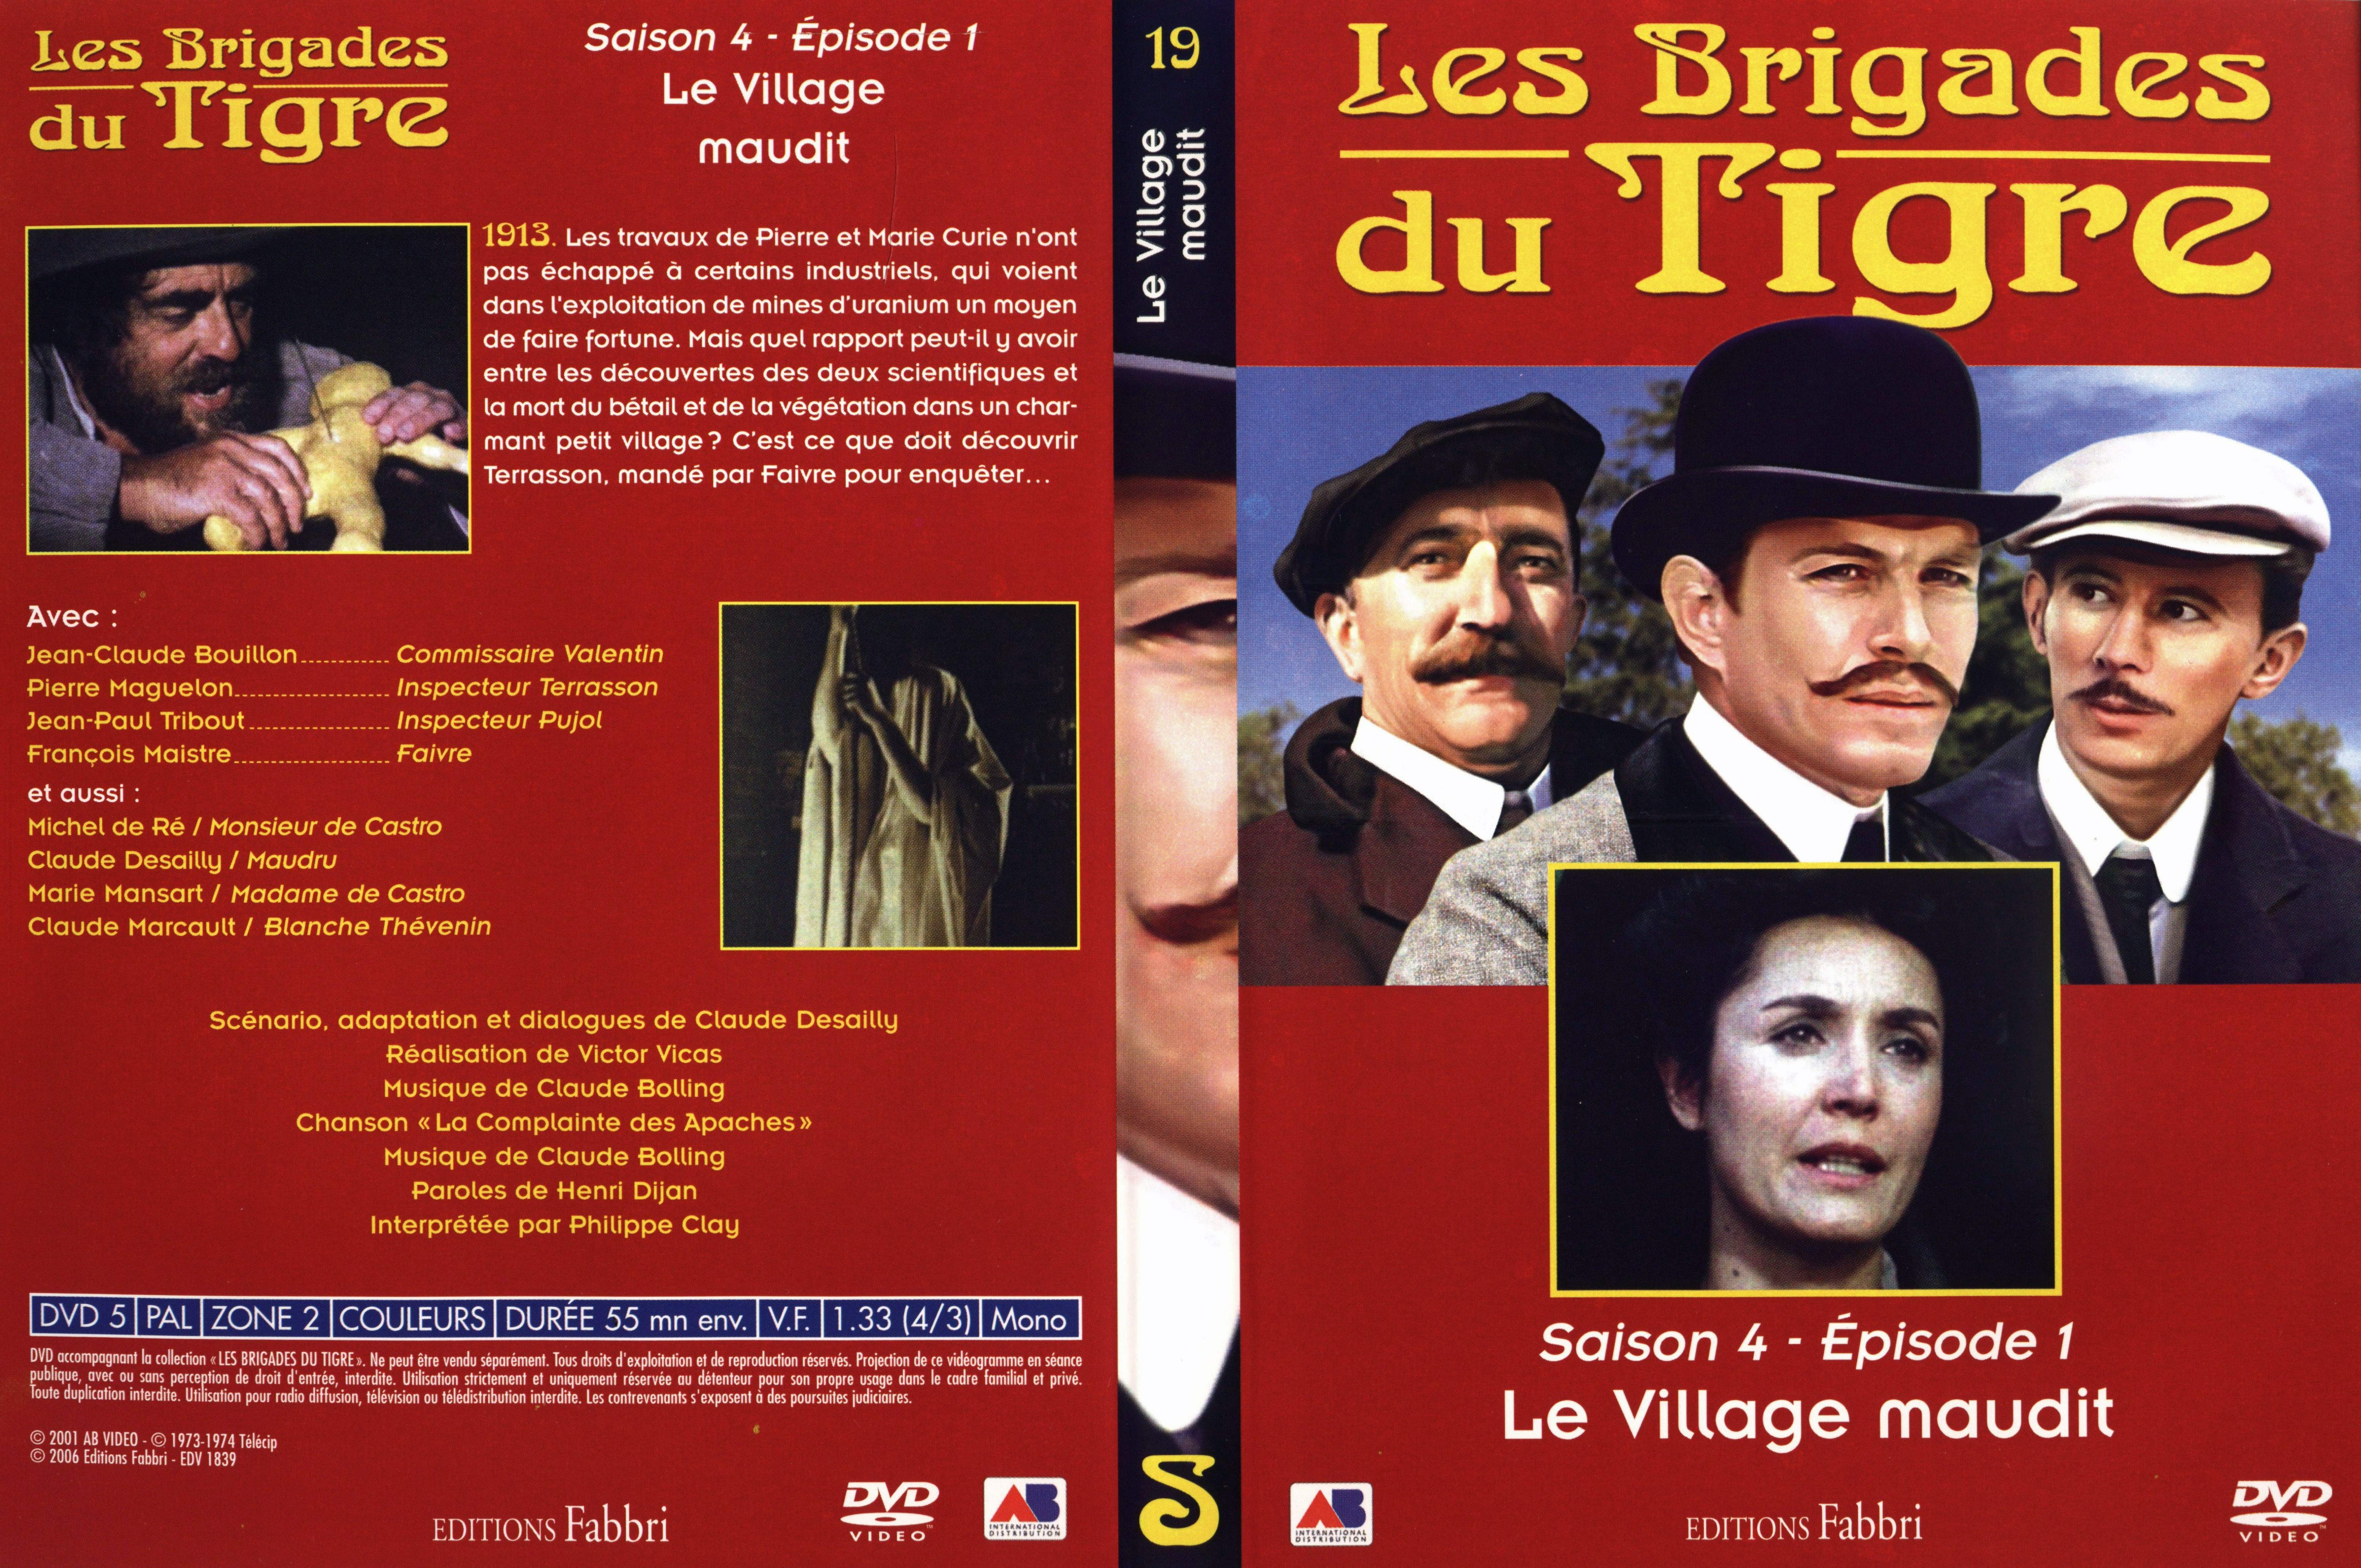 Jaquette DVD Les brigades du tigre saison 4 pisode 1